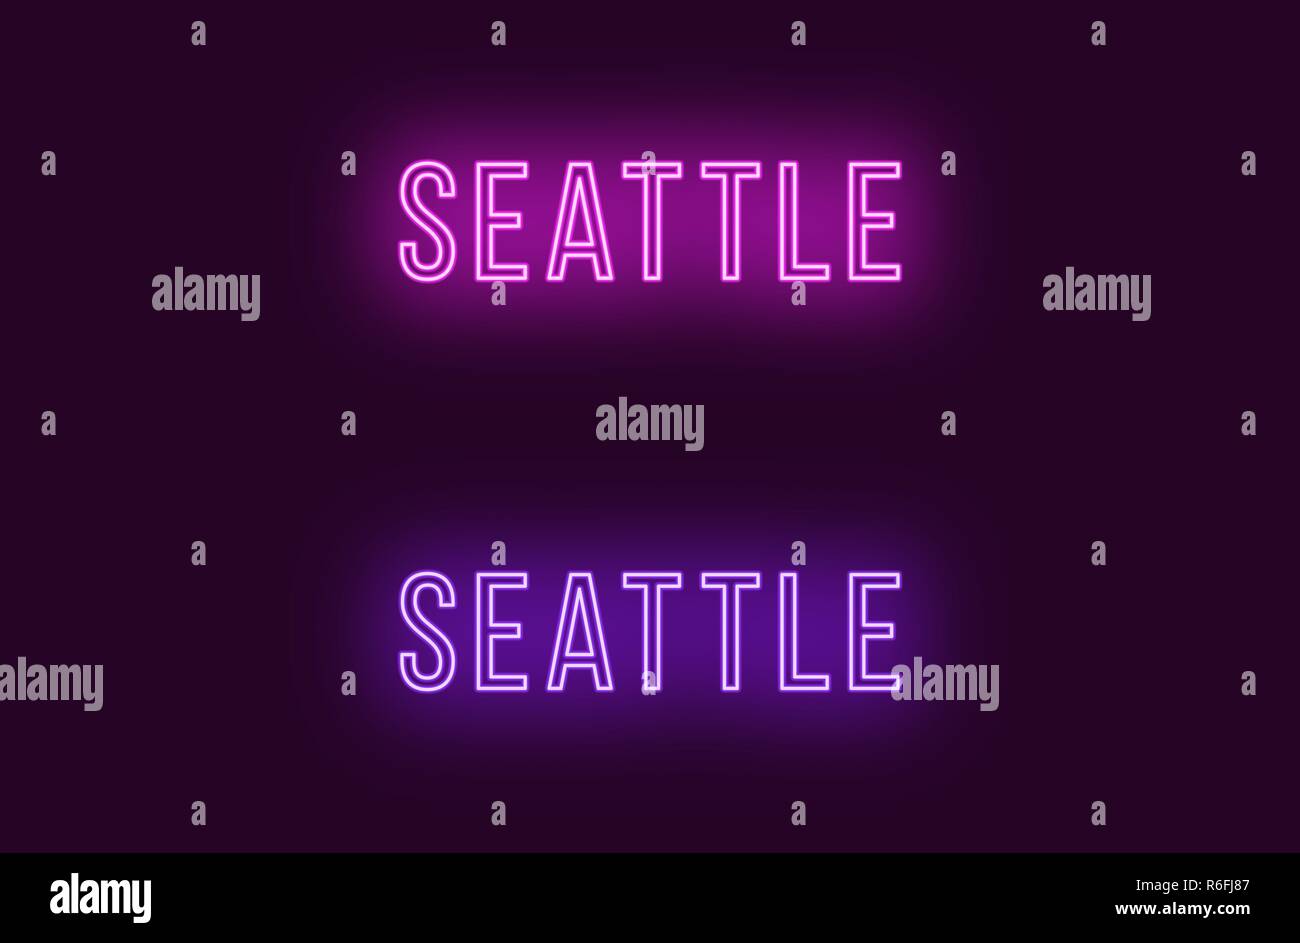 Neon Name des Seattle City in den USA. Vektor Text von Seattle, Neon Beschriftung mit Hintergrundbeleuchtung in dünnen Stil, Lila und violetten Farben. Isolierte glühende Ti Stock Vektor